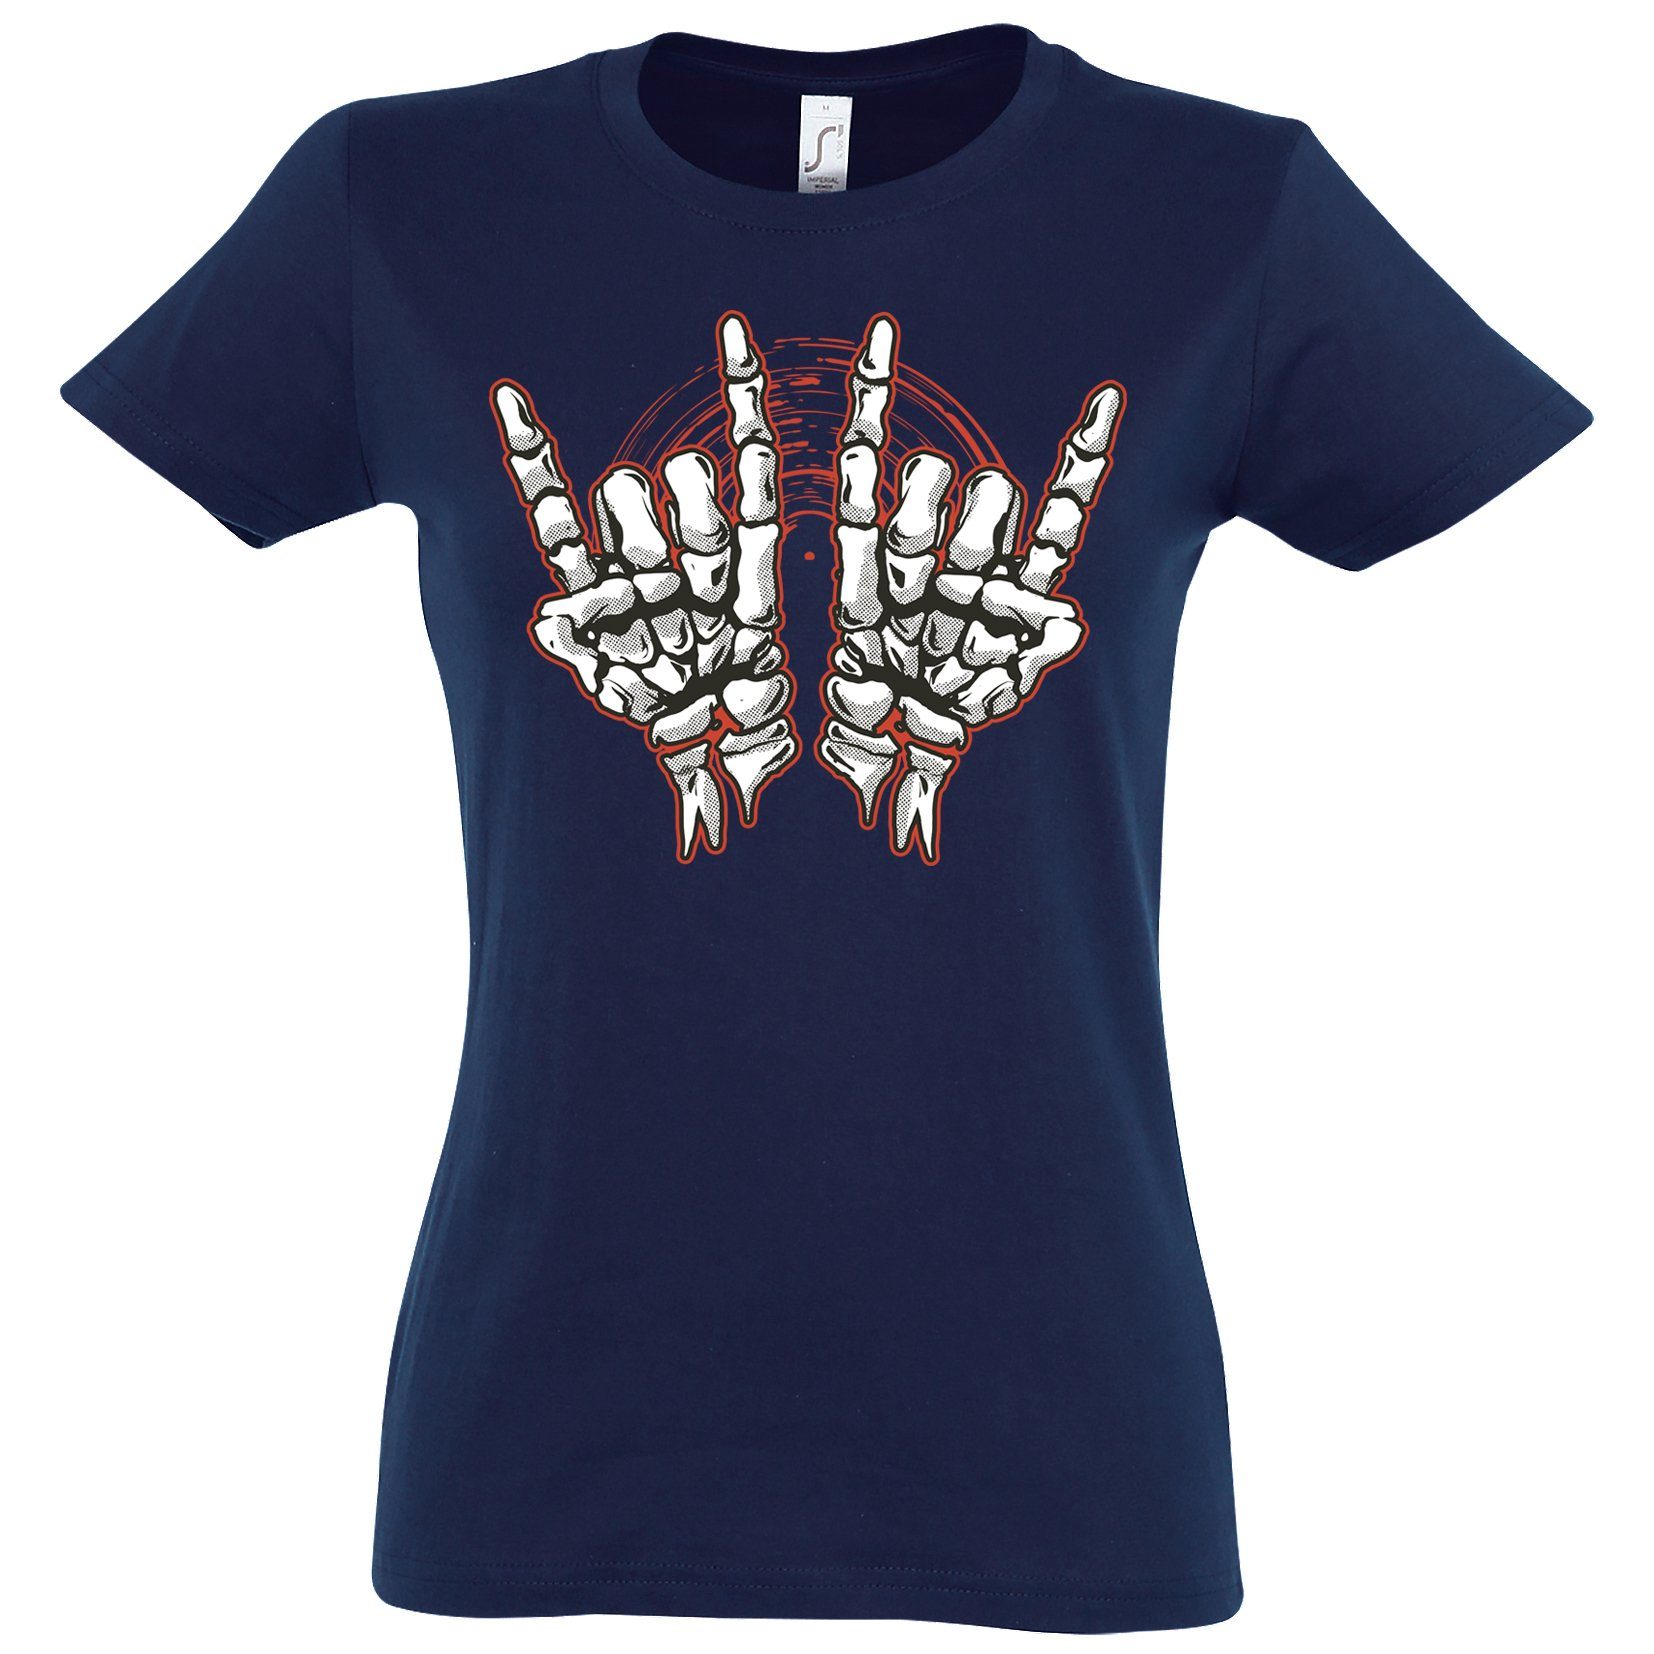 Youth Designz T-Shirt Skelett Hand Rock'n'Roll Damen Shirt Horror im Fun-Look Mit modischem Print Navy